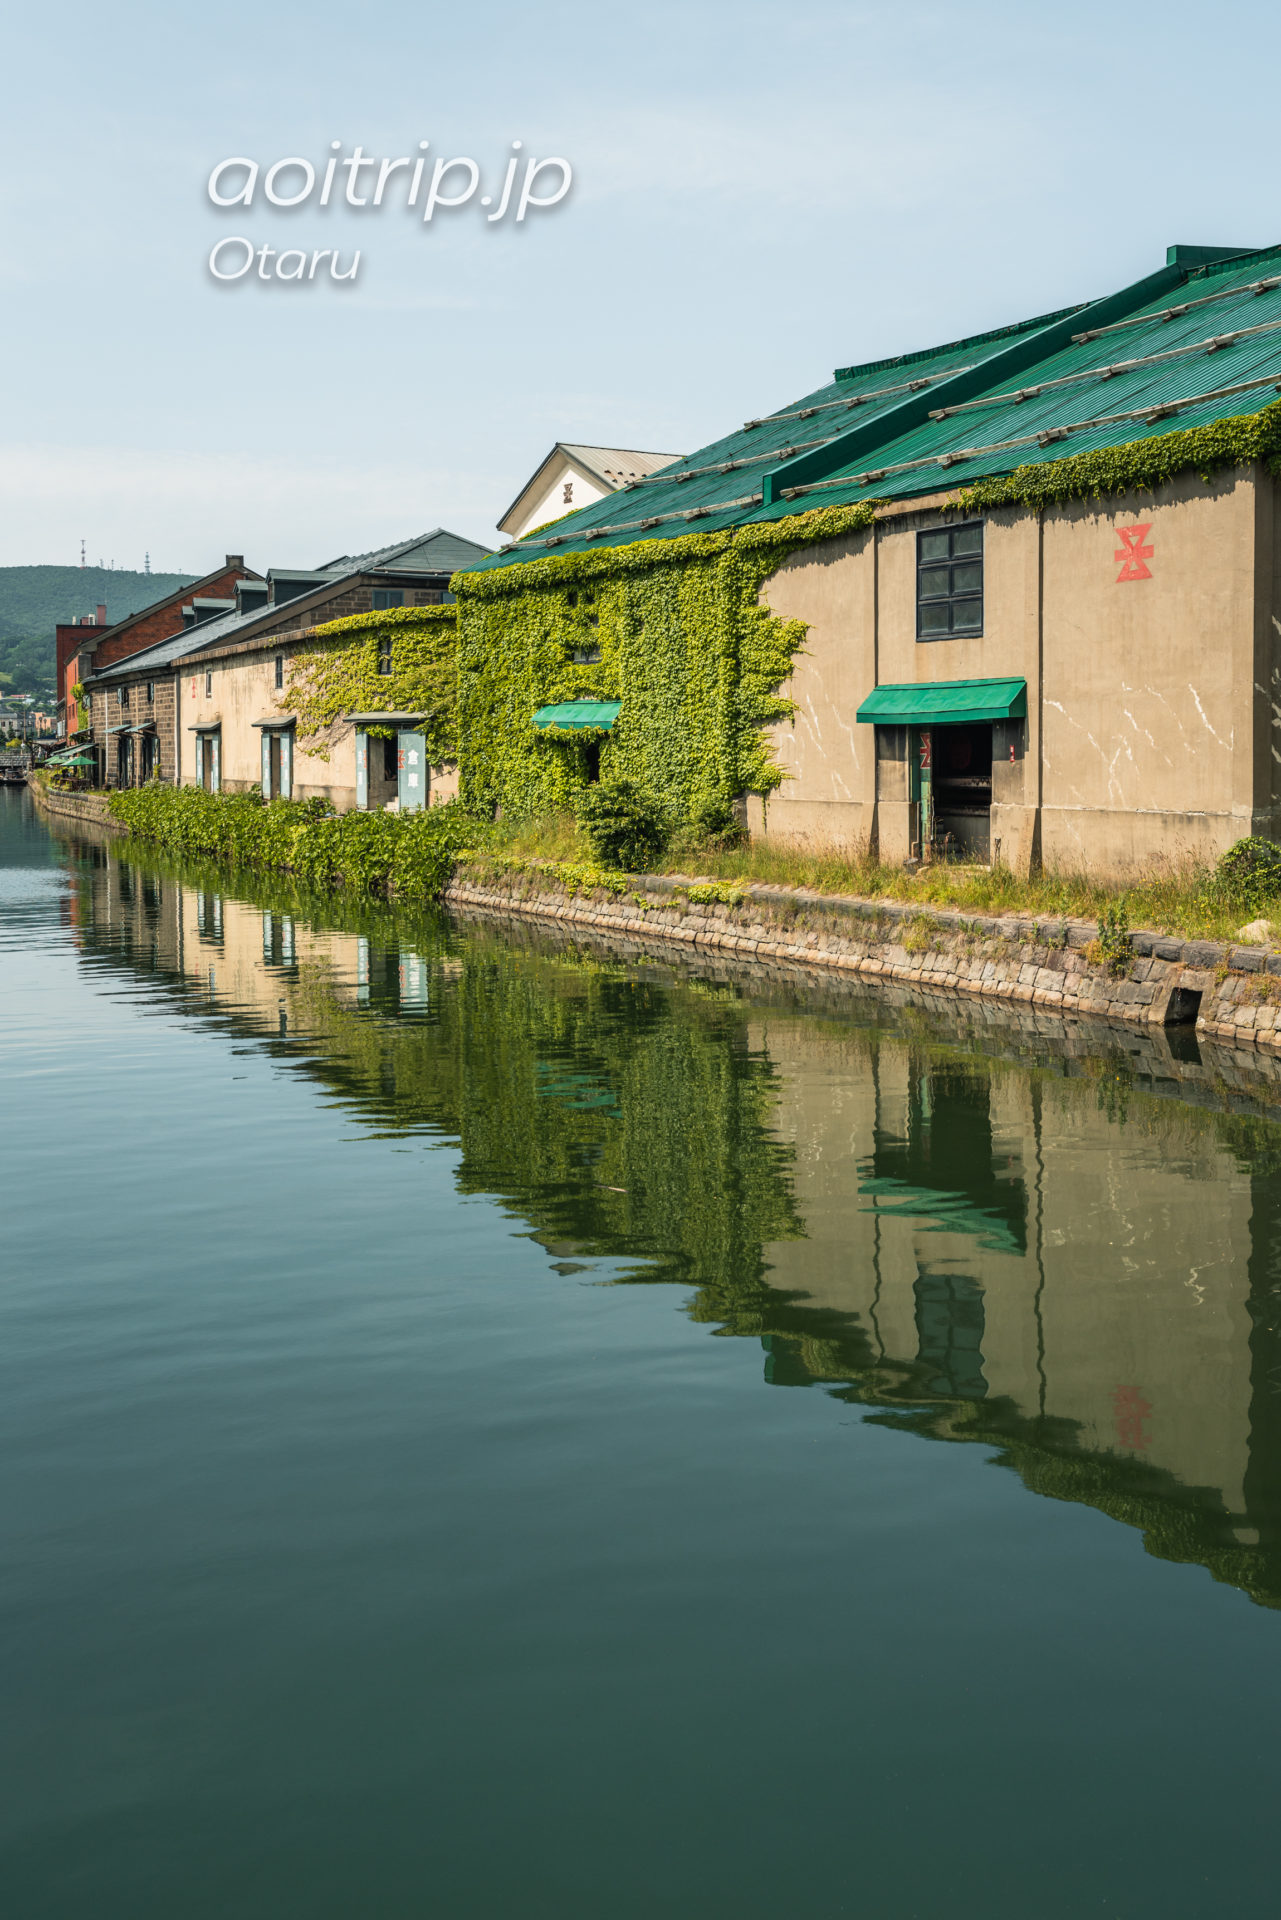 小樽運河 Otaru Canal